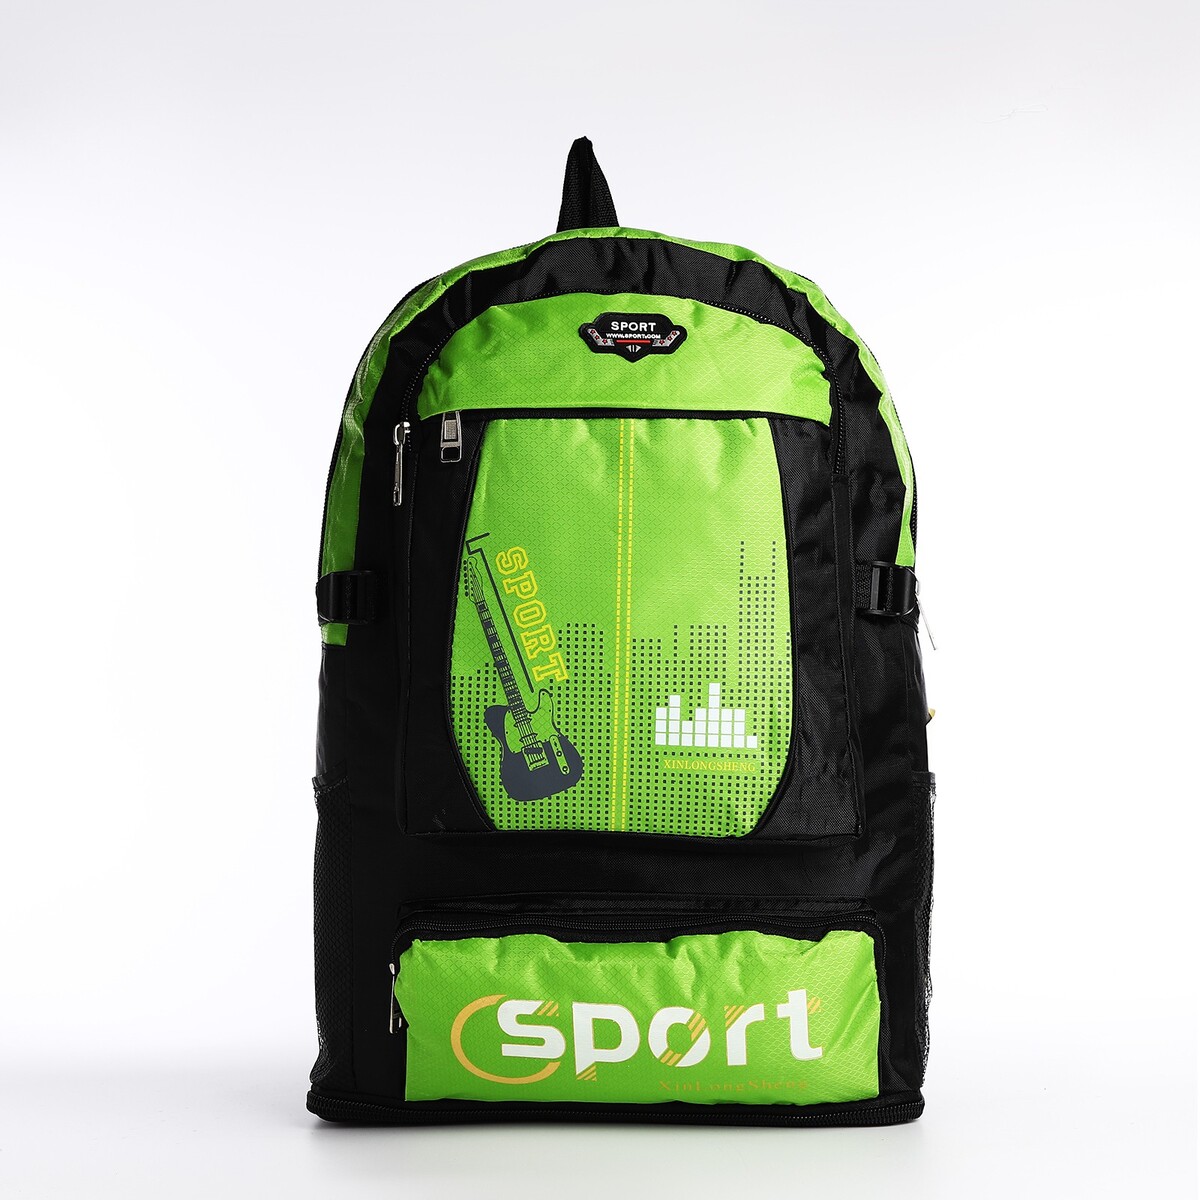 Рюкзак на молнии с увеличением, 55л, 5 наружных карманов, цвет зеленый рюкзак на молнии с увеличением 55л 5 наружных карманов зеленый